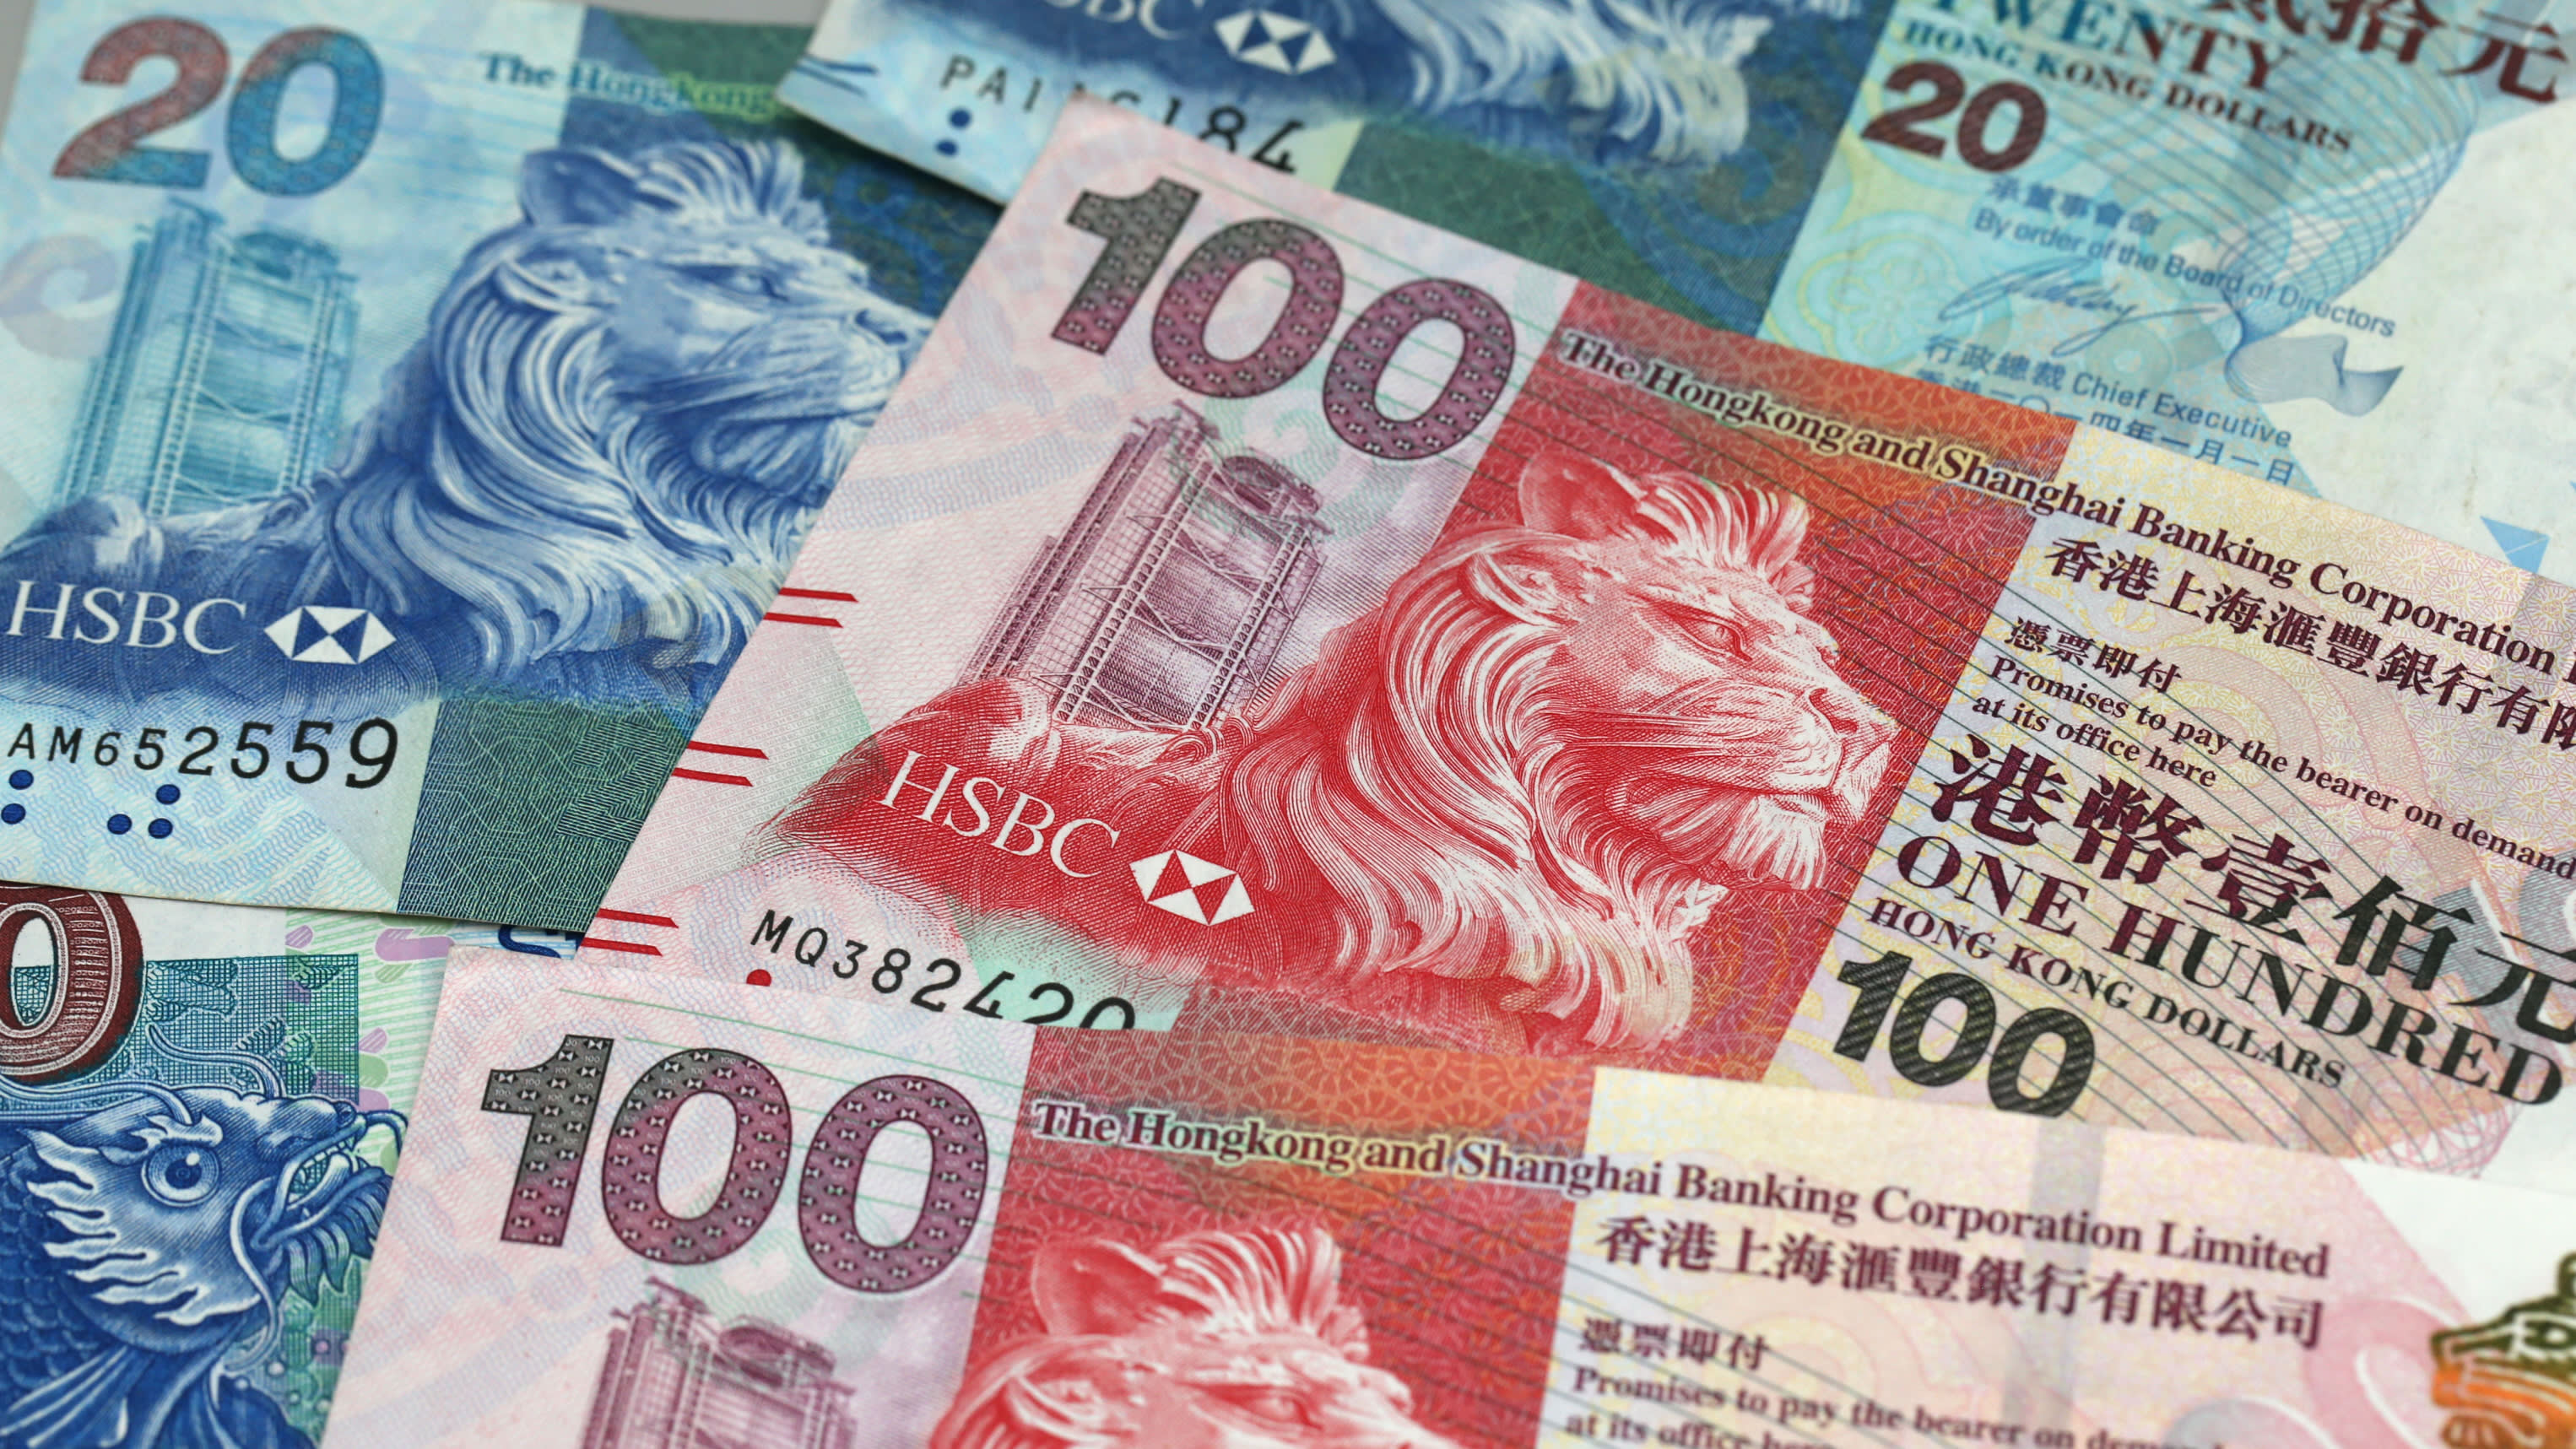 899 hkd в рублях. Деньги Гонконга. Гонконг денежные купюры. Гонконгский доллар. Гонконгский доллар, валюта Гонконга..